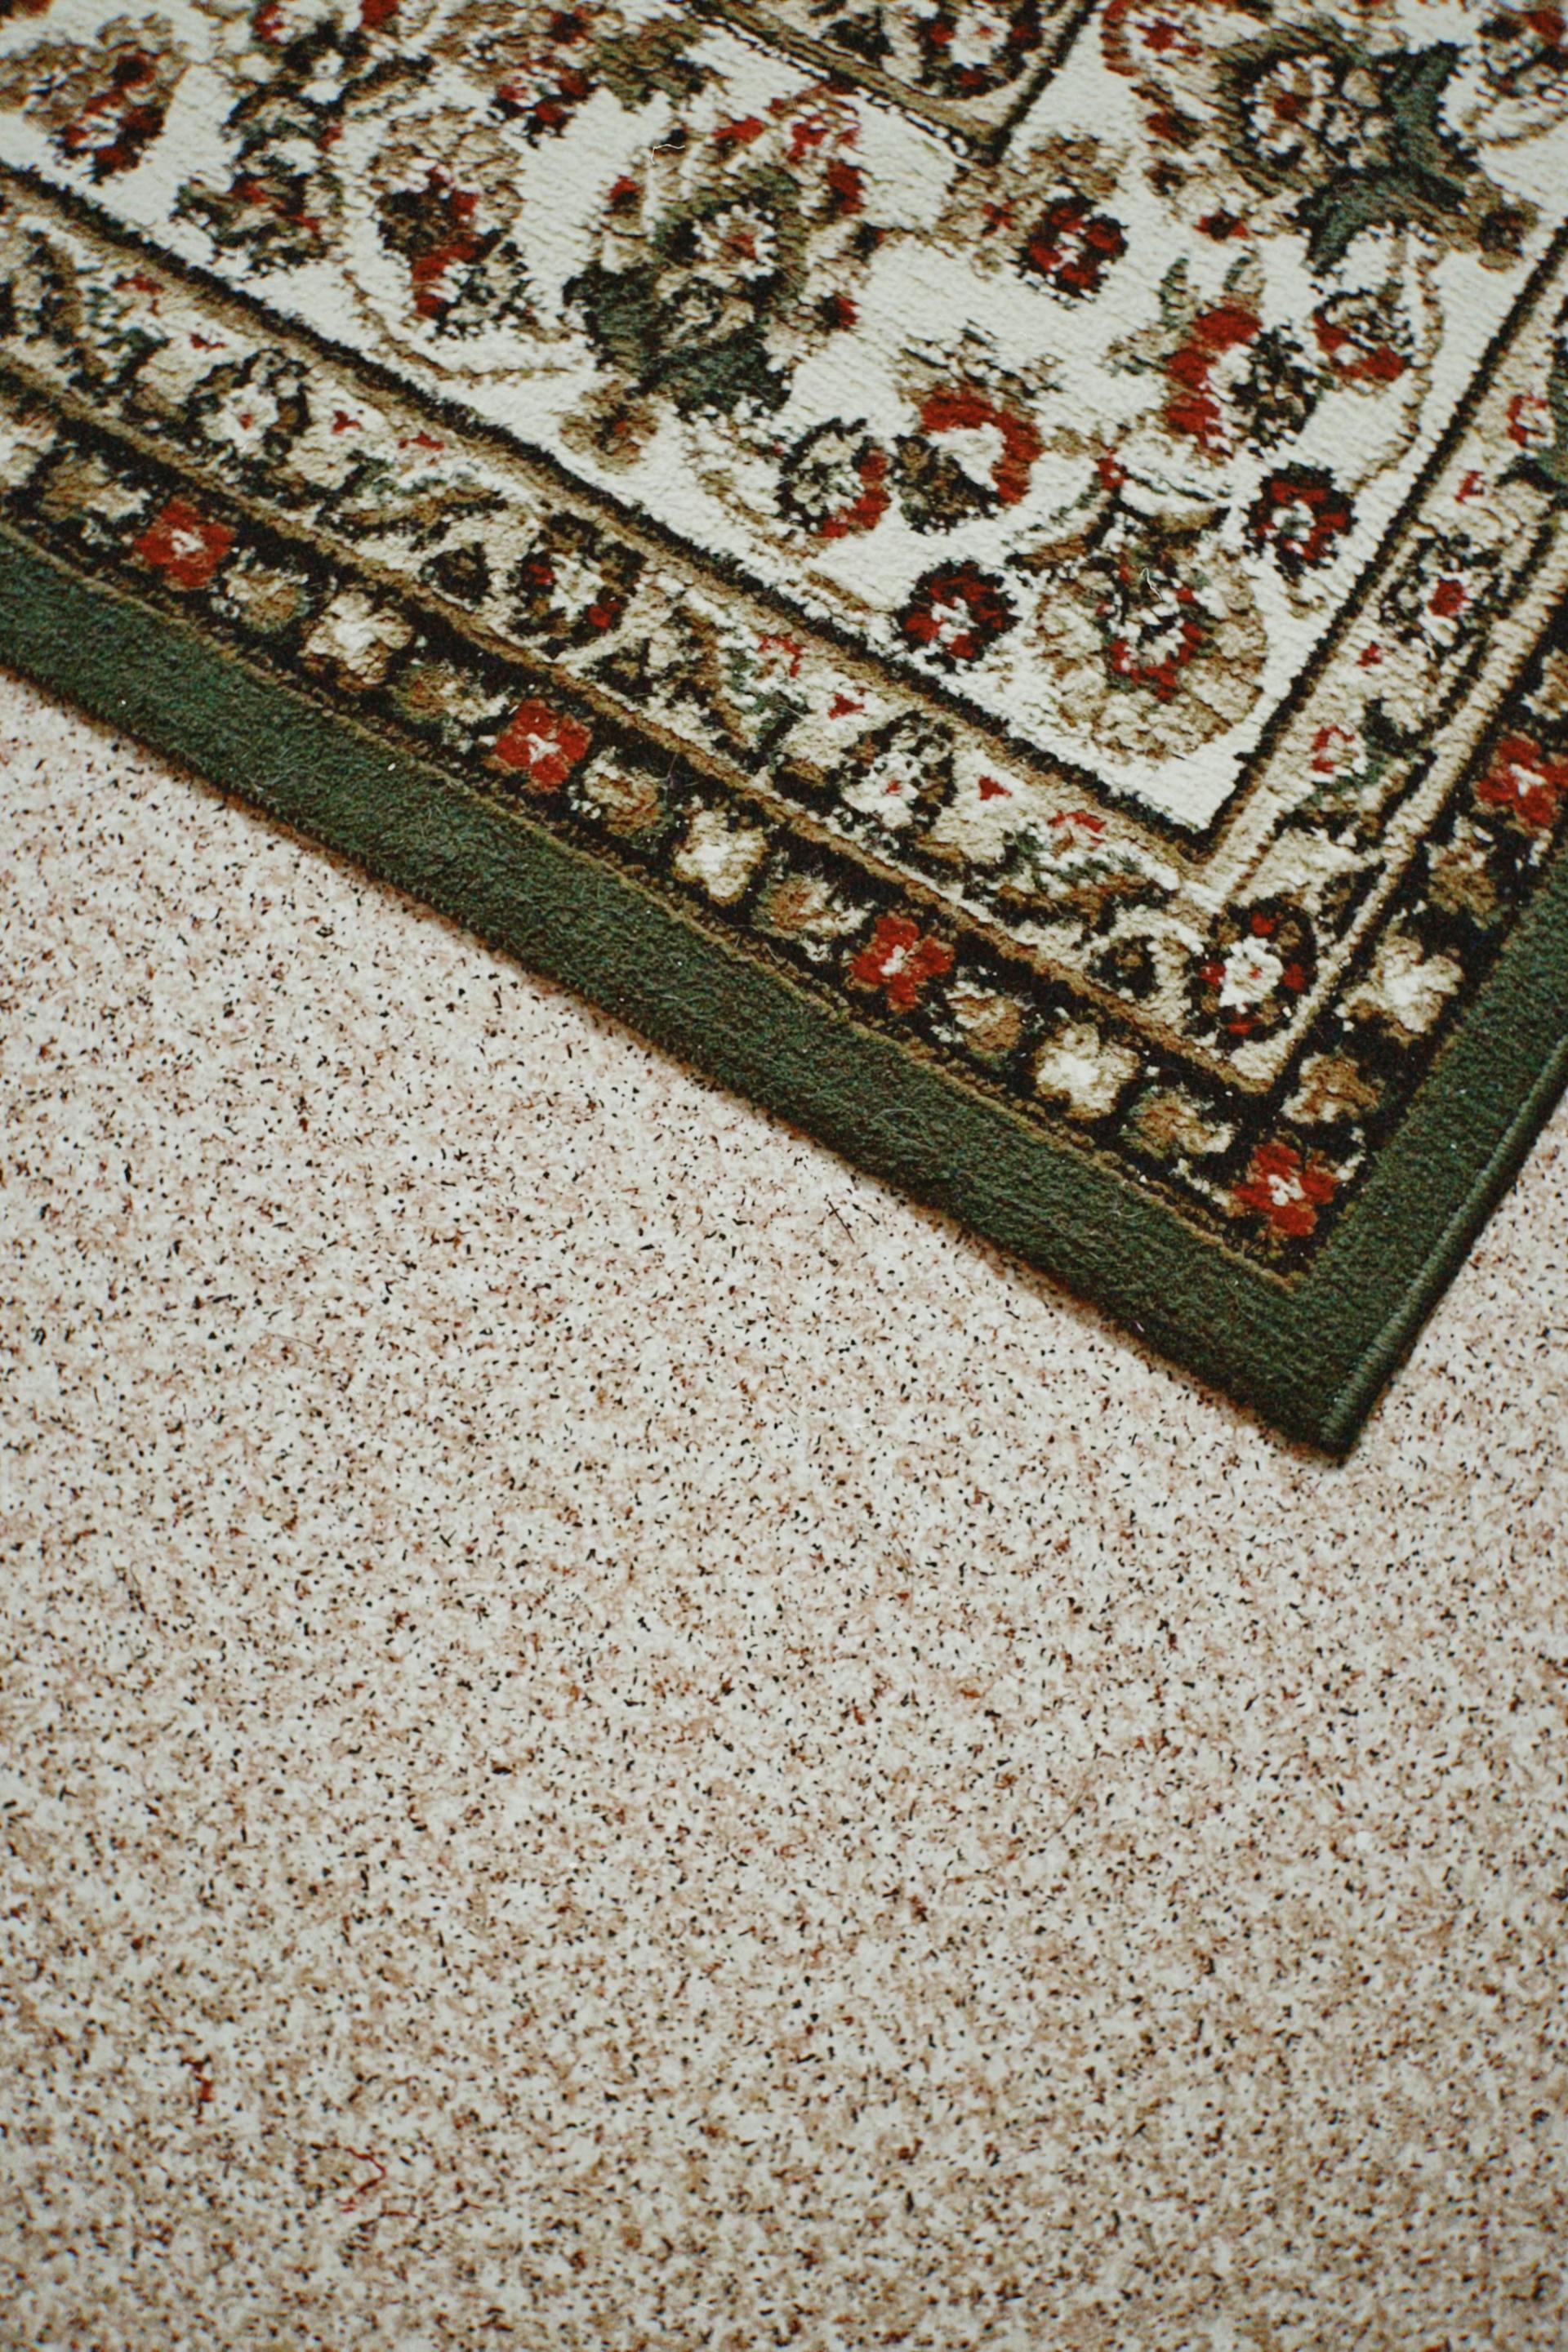 Primer plano de una alfombra en un suelo enmoquetado | Fuente: Pexels